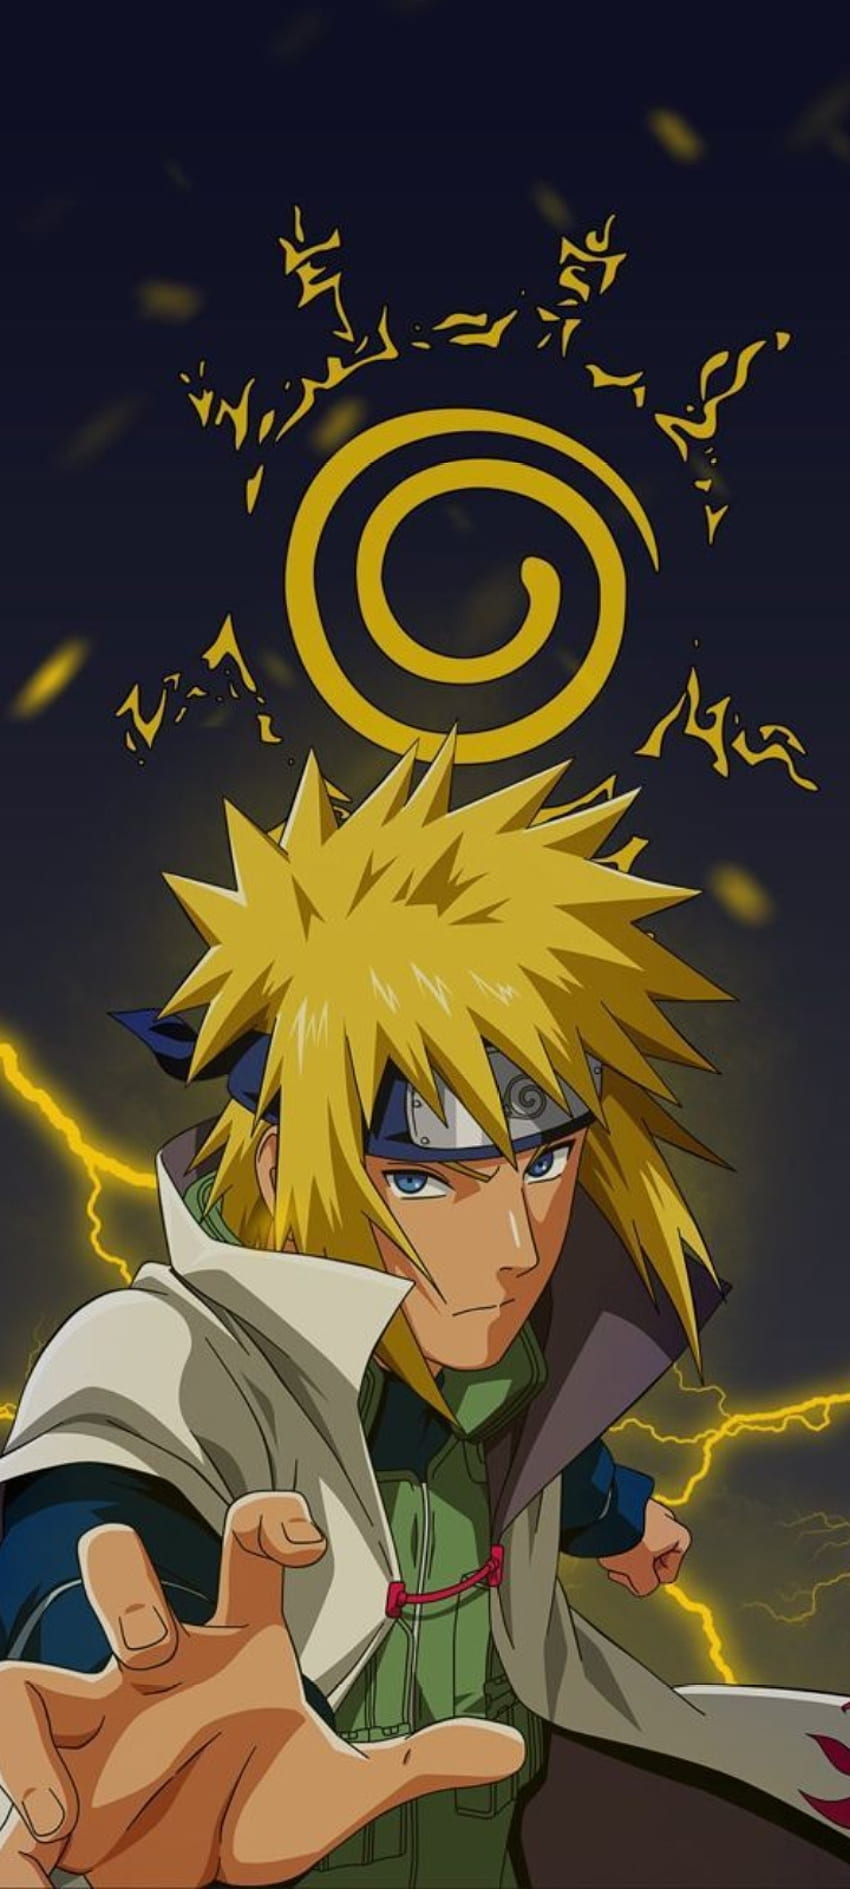 Minato: Khám phá cuộc đời của Minato, người đã trở thành người đứng đầu trong tất cả các huyền thoại. Các bức ảnh đẹp tràn ngập năng lượng của Minato sẽ giúp bạn hiểu rõ hơn về anh hùng tuyệt vời này, người đã đặt tên cho một trong những kỹ thuật ninja mạnh nhất trong Naruto.